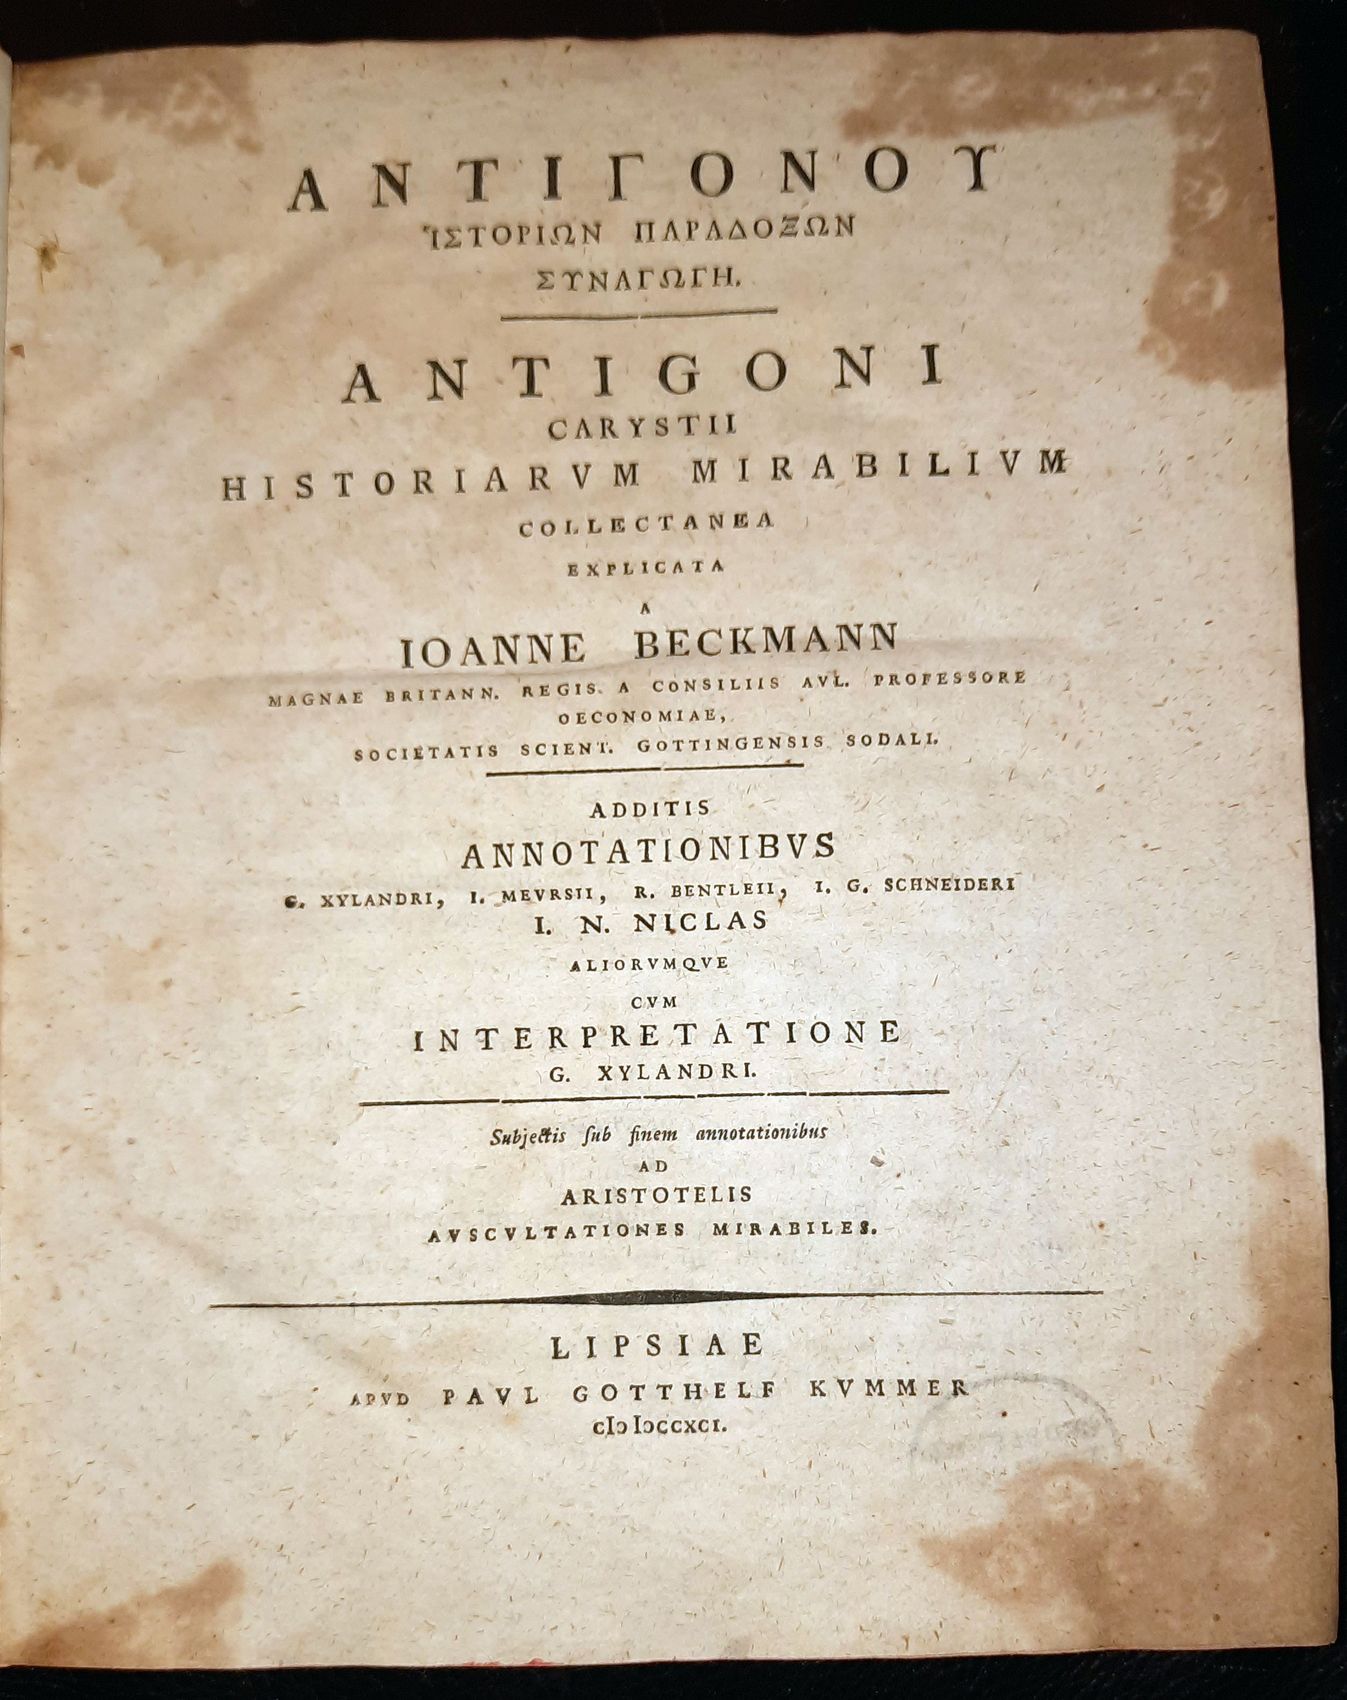 ANTIGONUS CARYSTIUS: - Historiarum mirabilium collectanea explicata a Ioanne Beckmann  Additis annotationibus G. Xylandri, I. Meursii .